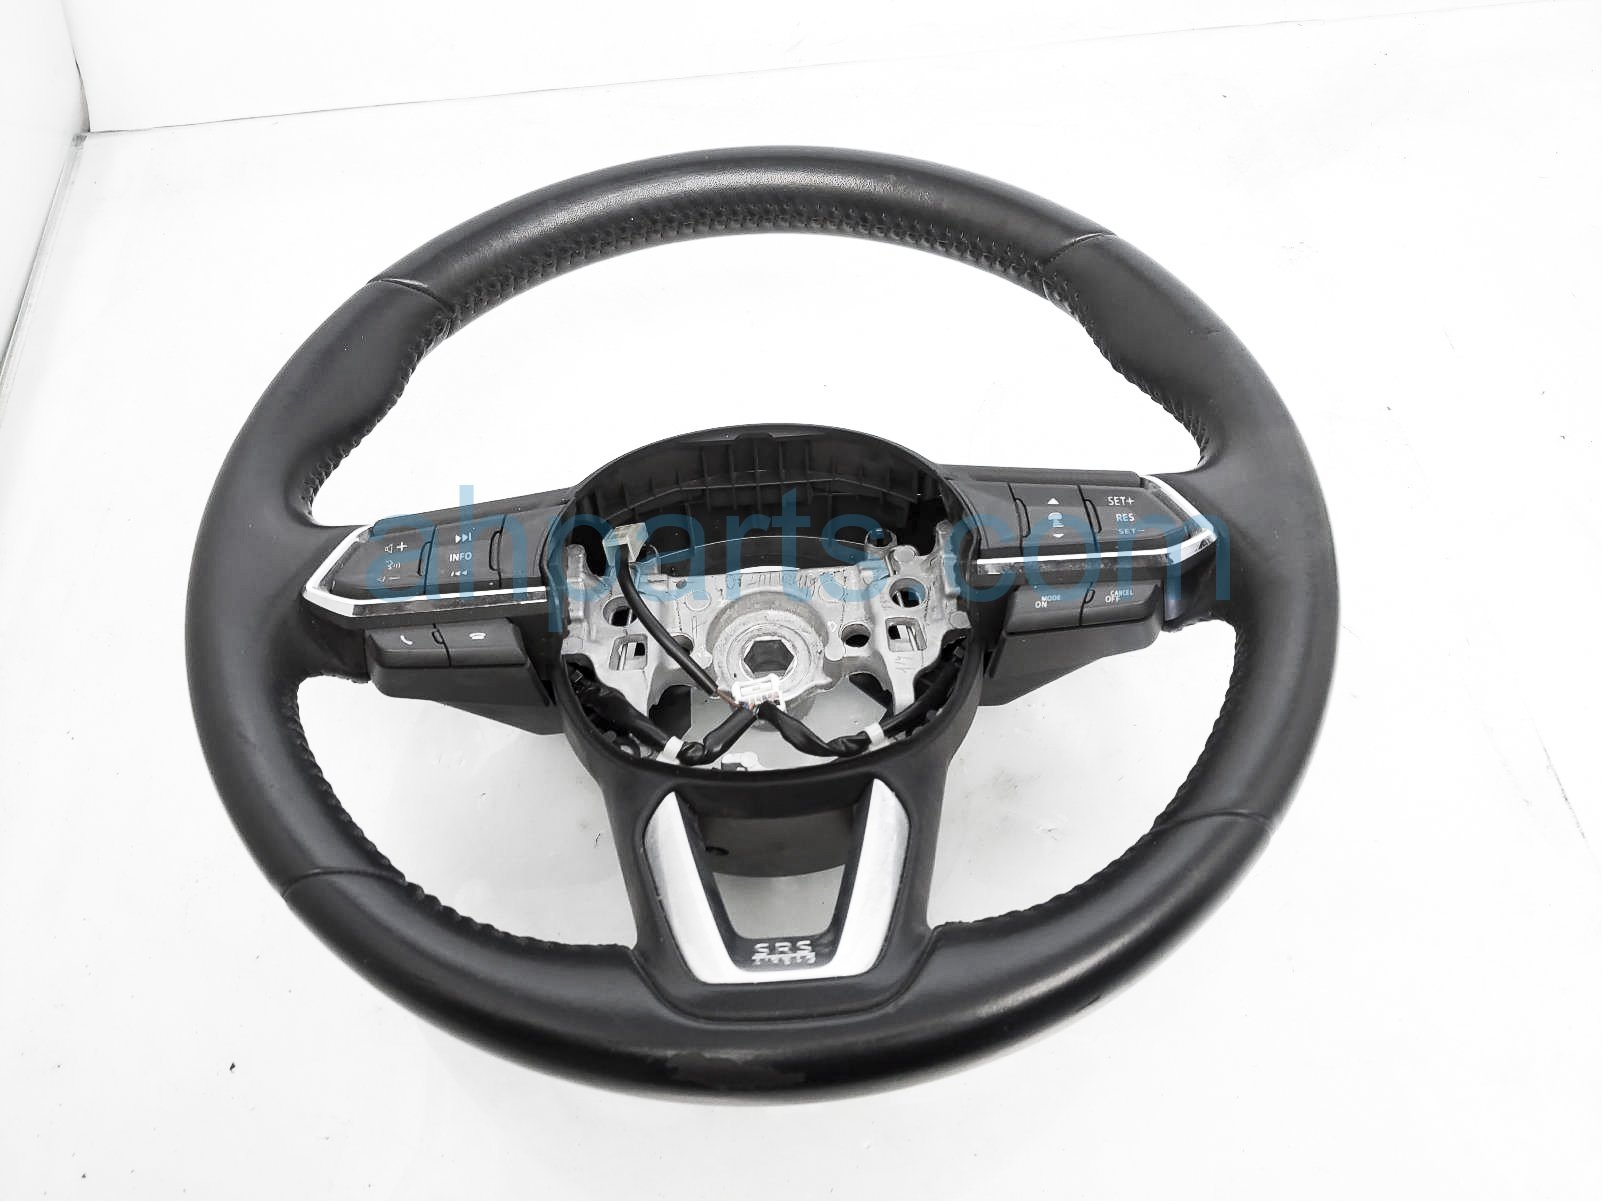 Sold 2019 Mazda CX-9 Steering Wheel - Black - Touring TK48-32-982-02